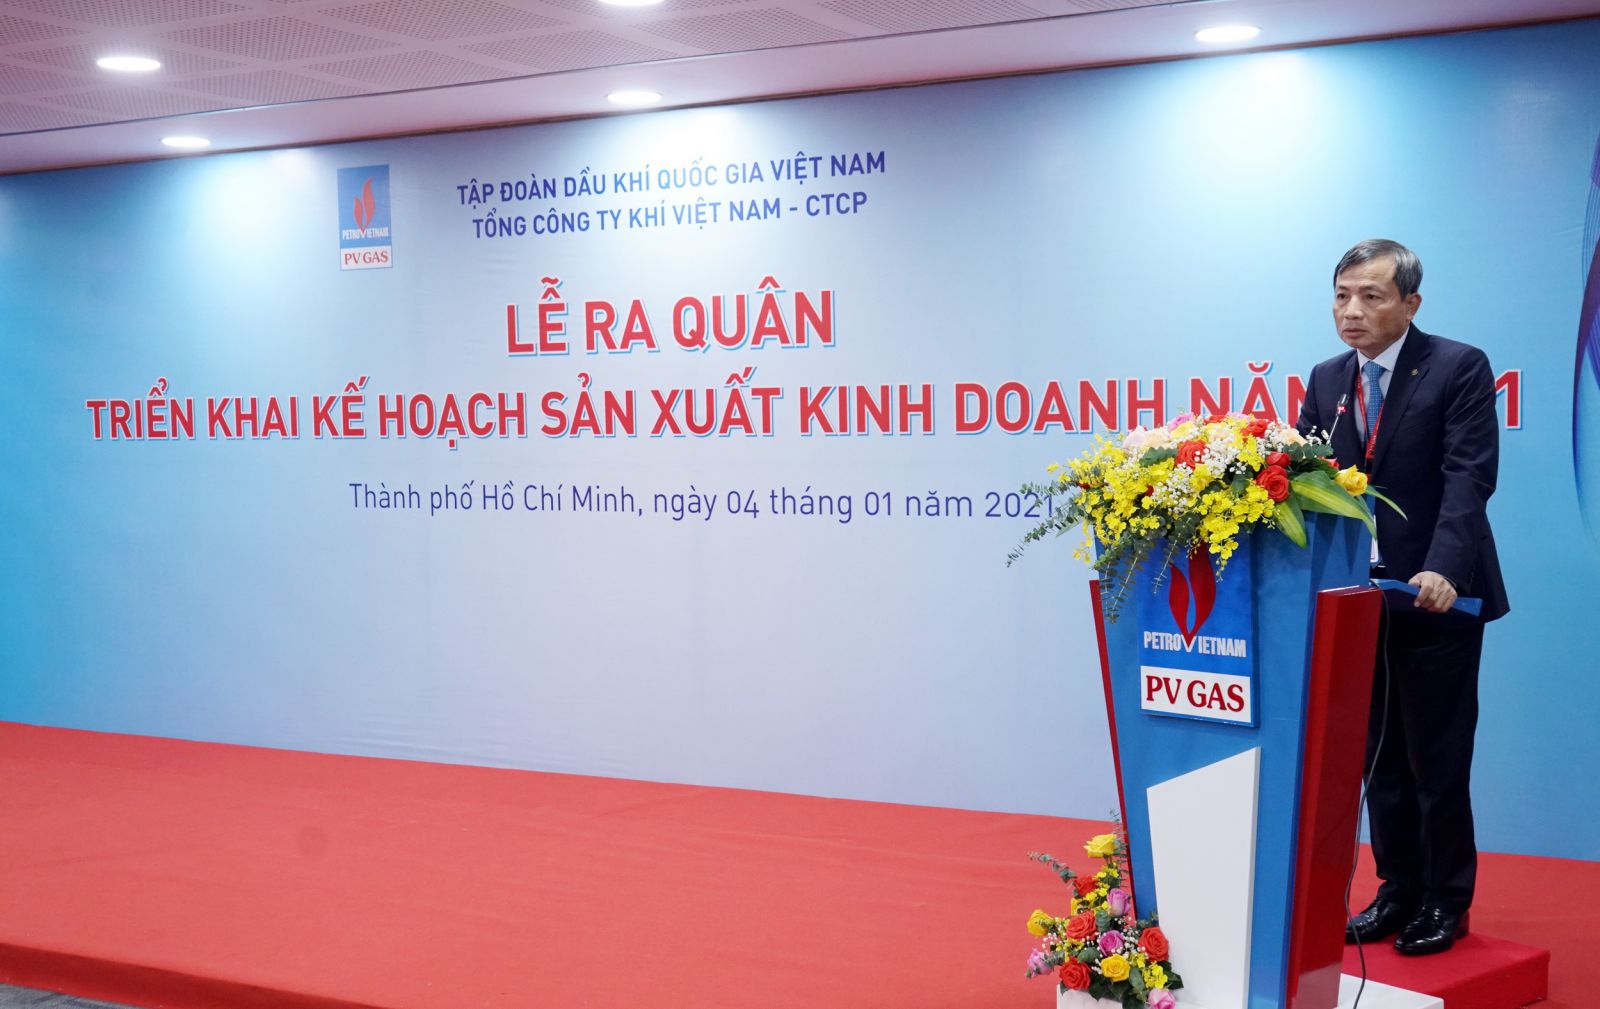 đồng chí Nguyễn Sinh Khang - Chủ tịch Hội đồng Quản trị